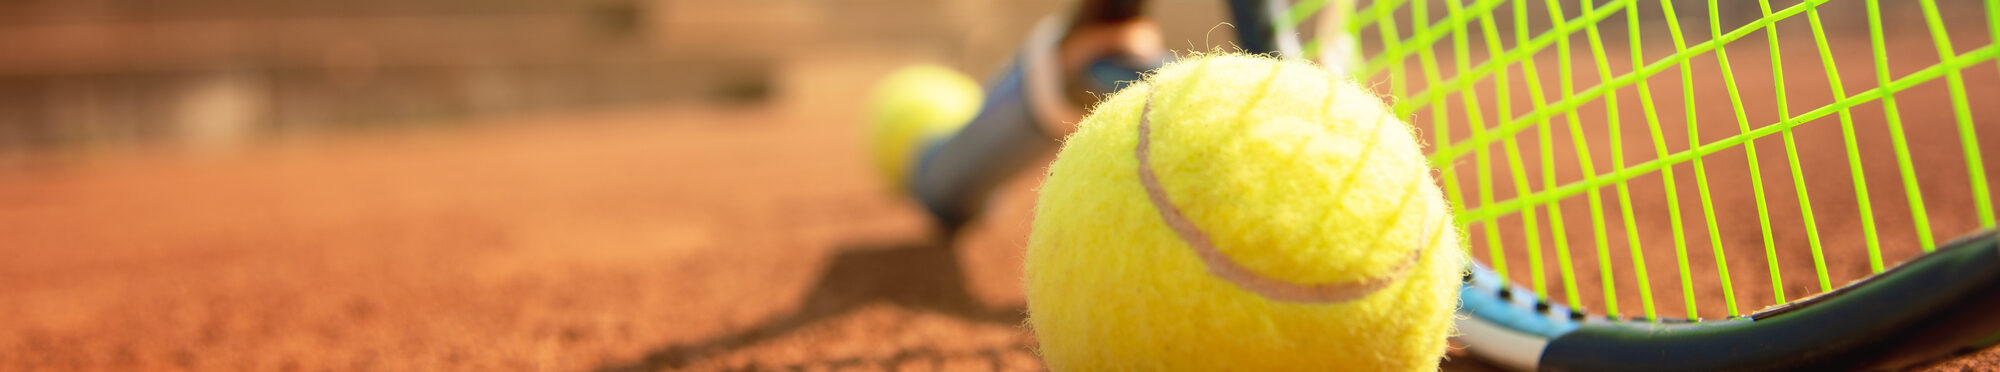 Tennisschläger und -ball auf einem Tennisplatz